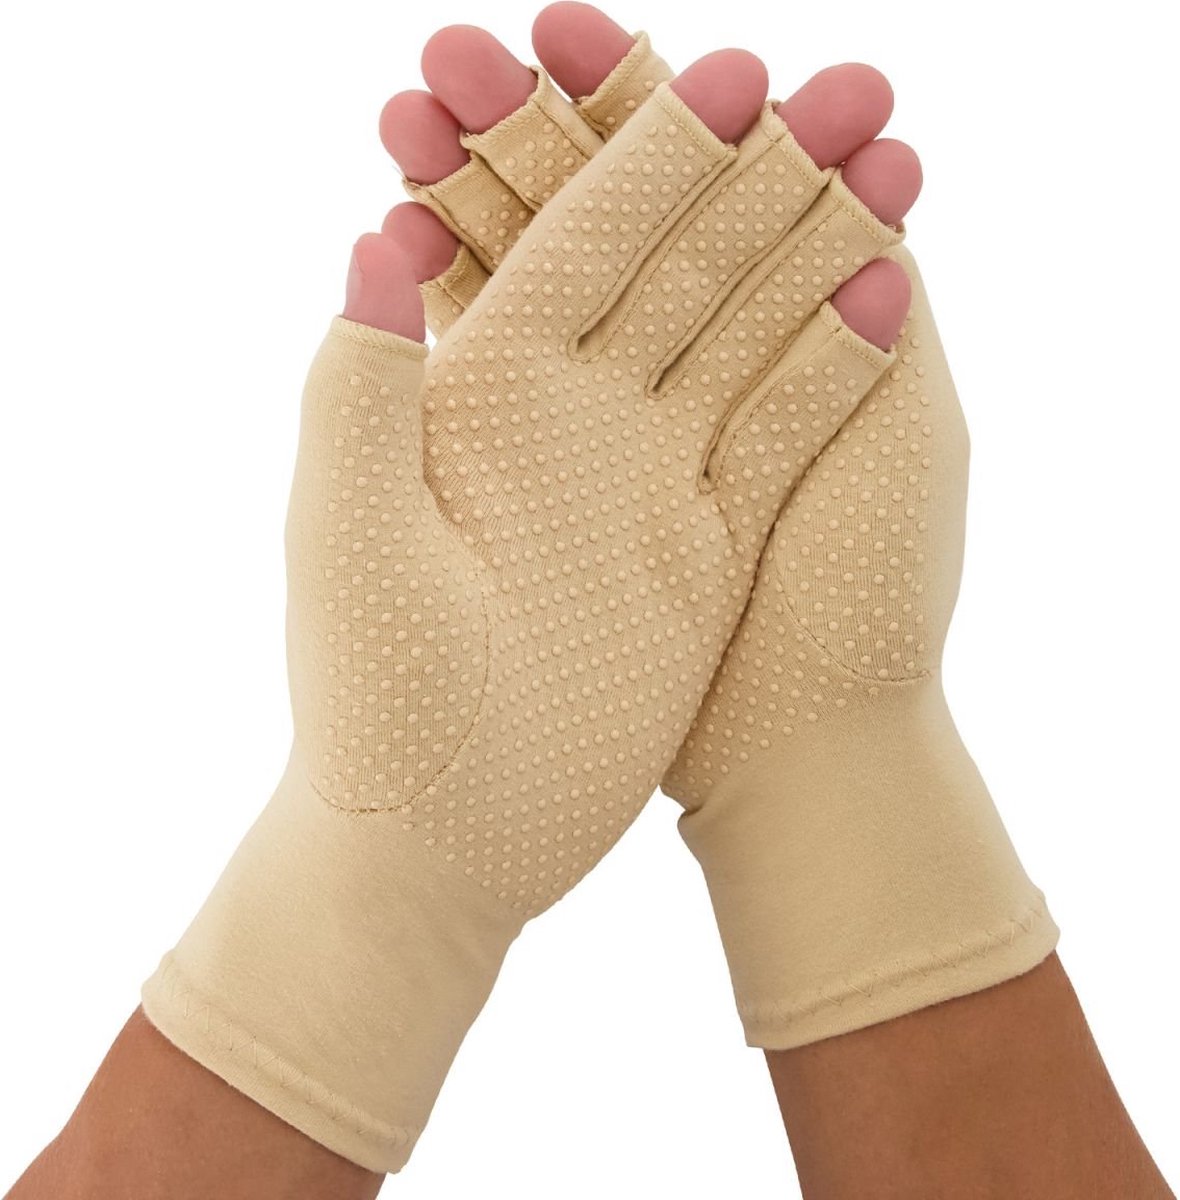 Medidu Artrose Handschoenen - Reuma Handschoenen met Antisliplaag - Artitis Handschoenen met Open Vingertoppen - Per Paar - Beige - S